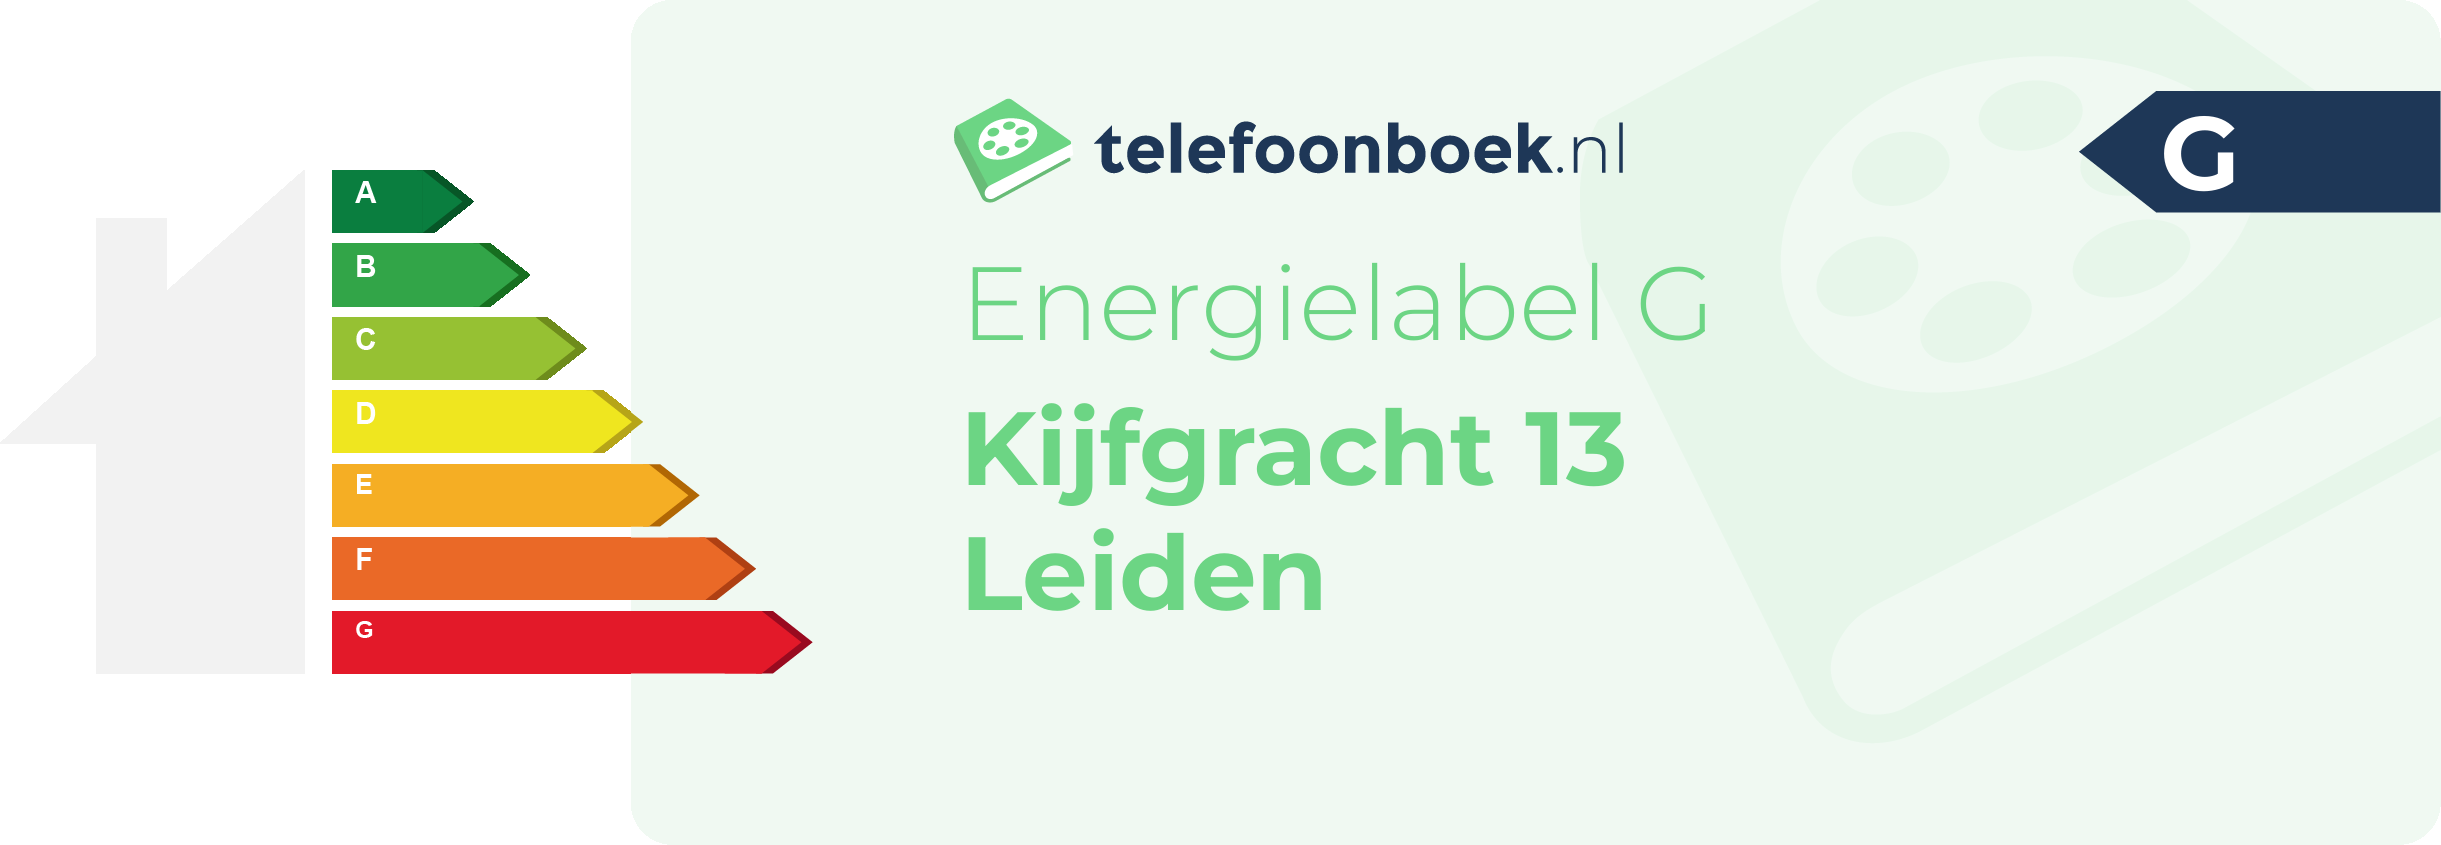 Energielabel Kijfgracht 13 Leiden